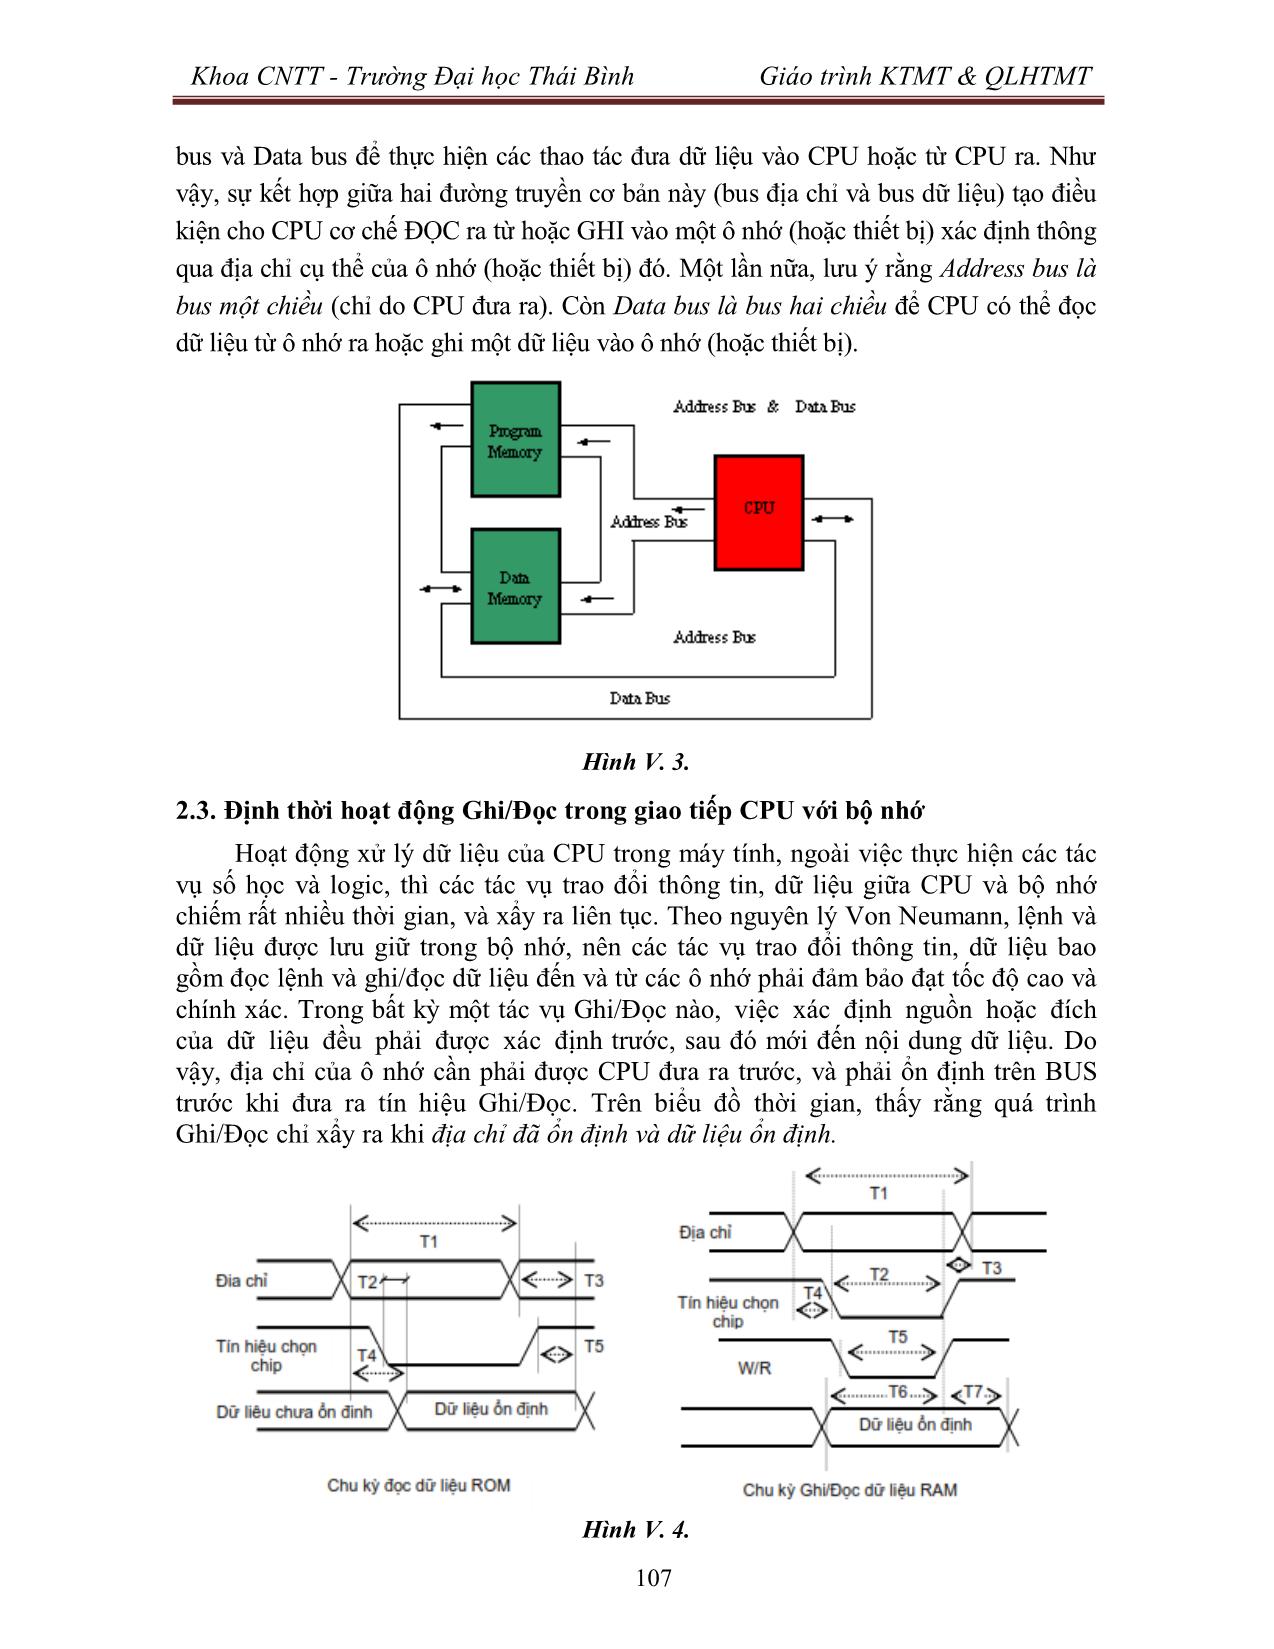 Giáo trình Kiến trúc máy tính & Quản lý hệ thống máy tính (Phần 2) trang 4